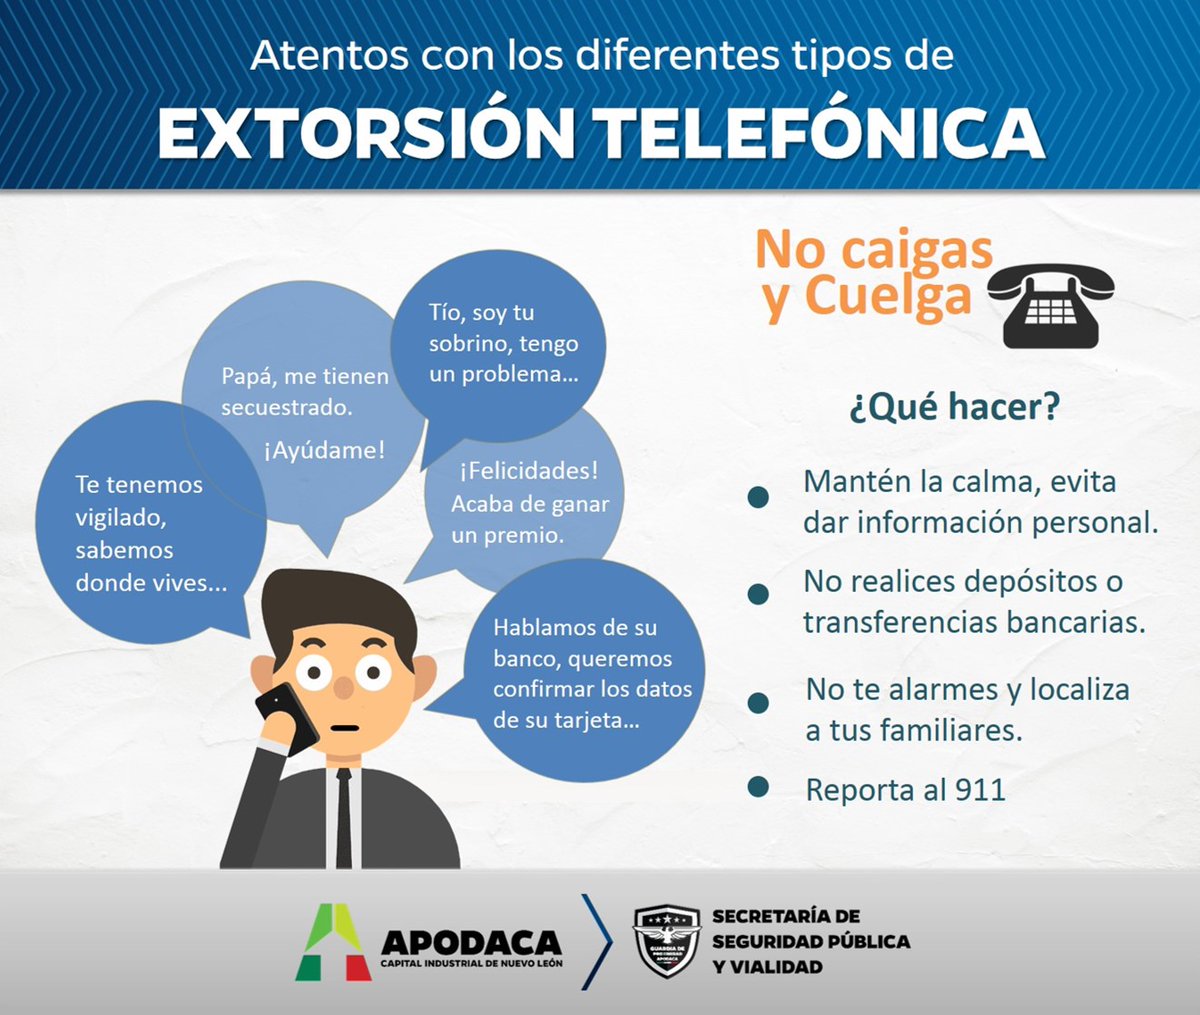 Atentos con los diferentes tipos de Extorsión Telefónica. Reporta al 911. #AlSiguienteNivel